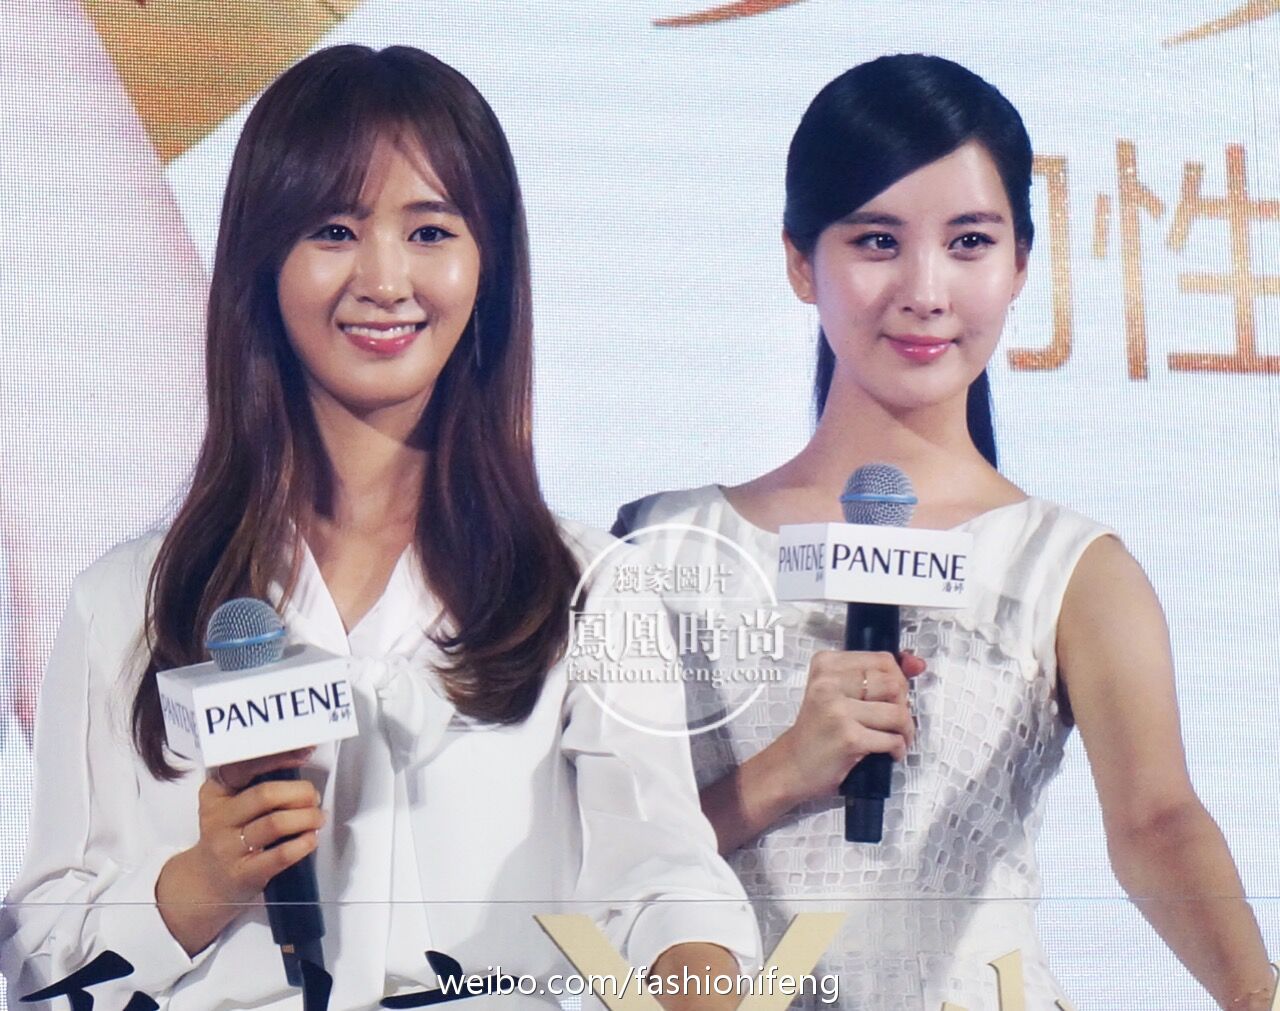 [PIC][04-08-2016]Yuri và SeoHyun khởi hành đi Trung Quốc để quảng bá cho thương hiệu dầu gội – “PANTENE” vào sáng nay - Page 2 80e3e3d0jw1f6hzz4riiyj20zk0s3n2m